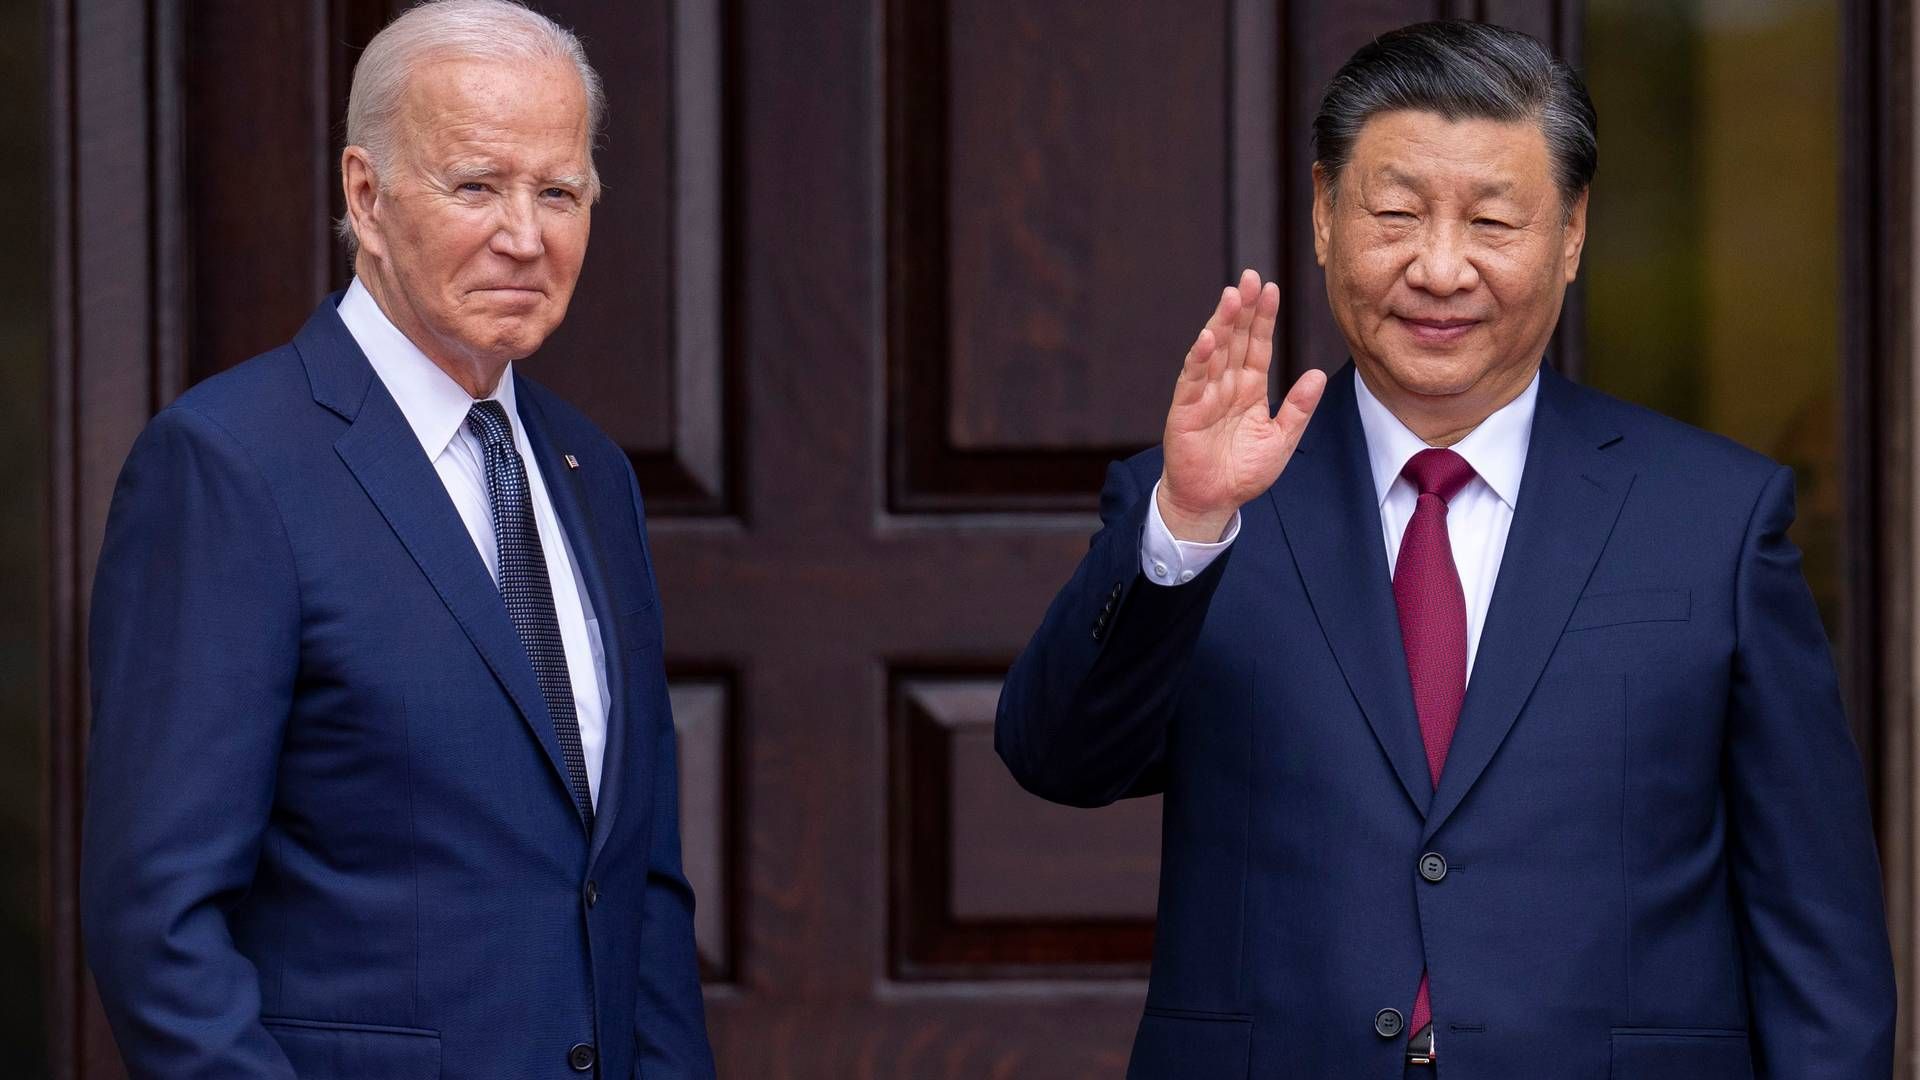 Handelskrigen mellem USA og Kina breder sig måske også til bygning af nye skibe. Præsident Joe Biden (tv) har indledt en undersøgelse af, om kinesiske værfter bedriver unfair konkurrence. | Foto: Doug Mills/AP/Ritzau Scanpix